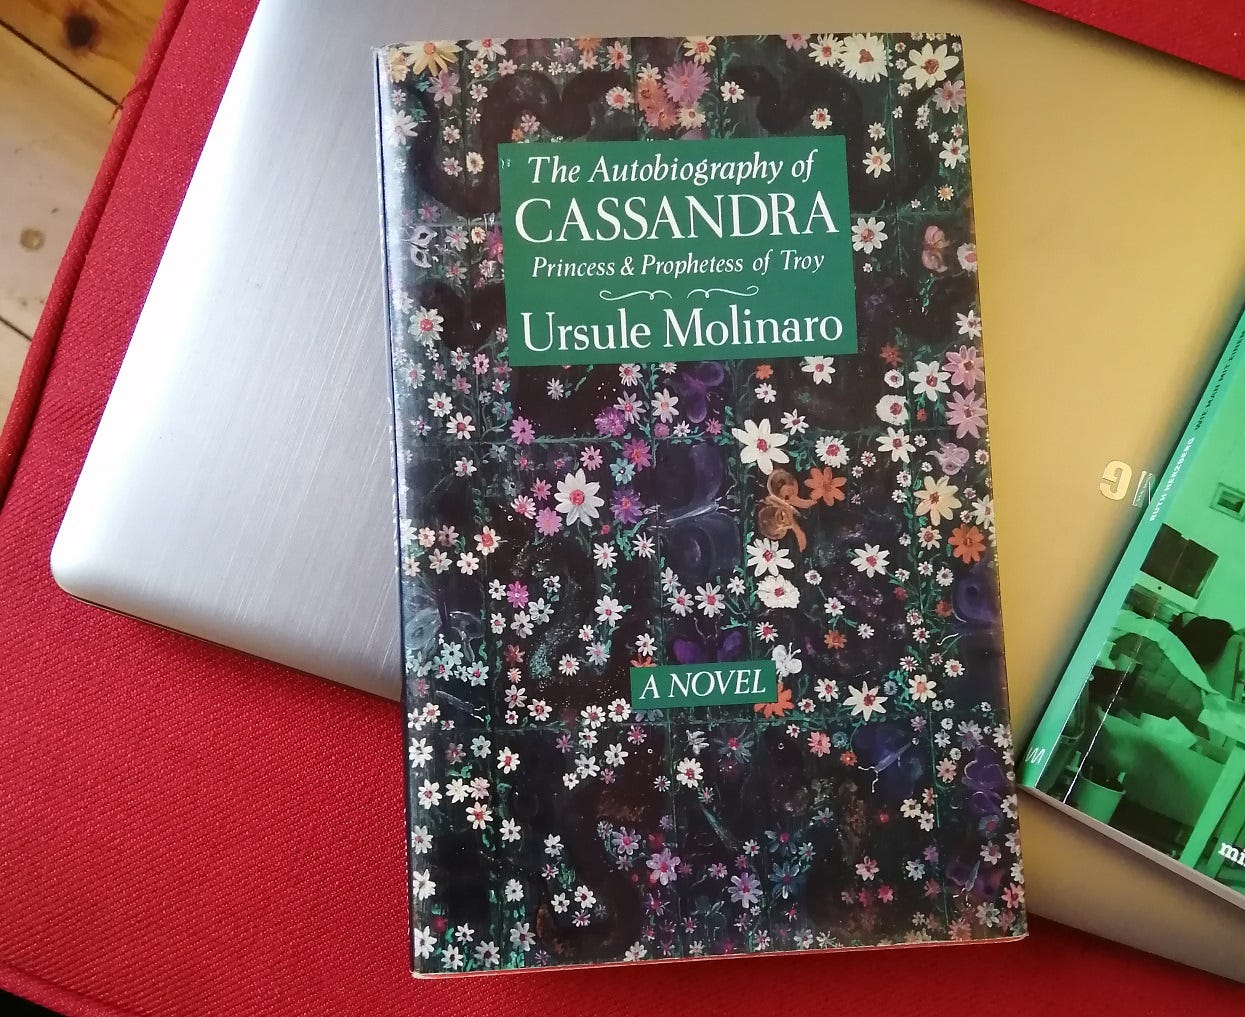 Das Buch "The Autobiography of Cassandra" von ursule Molinaro. Das Cover zeigt ein buntes Blumenmuster, darauf ein grünes Rechteck im oberen Teil, in dem in weißer Schrift der Titel und der Autorinnenname stehen.